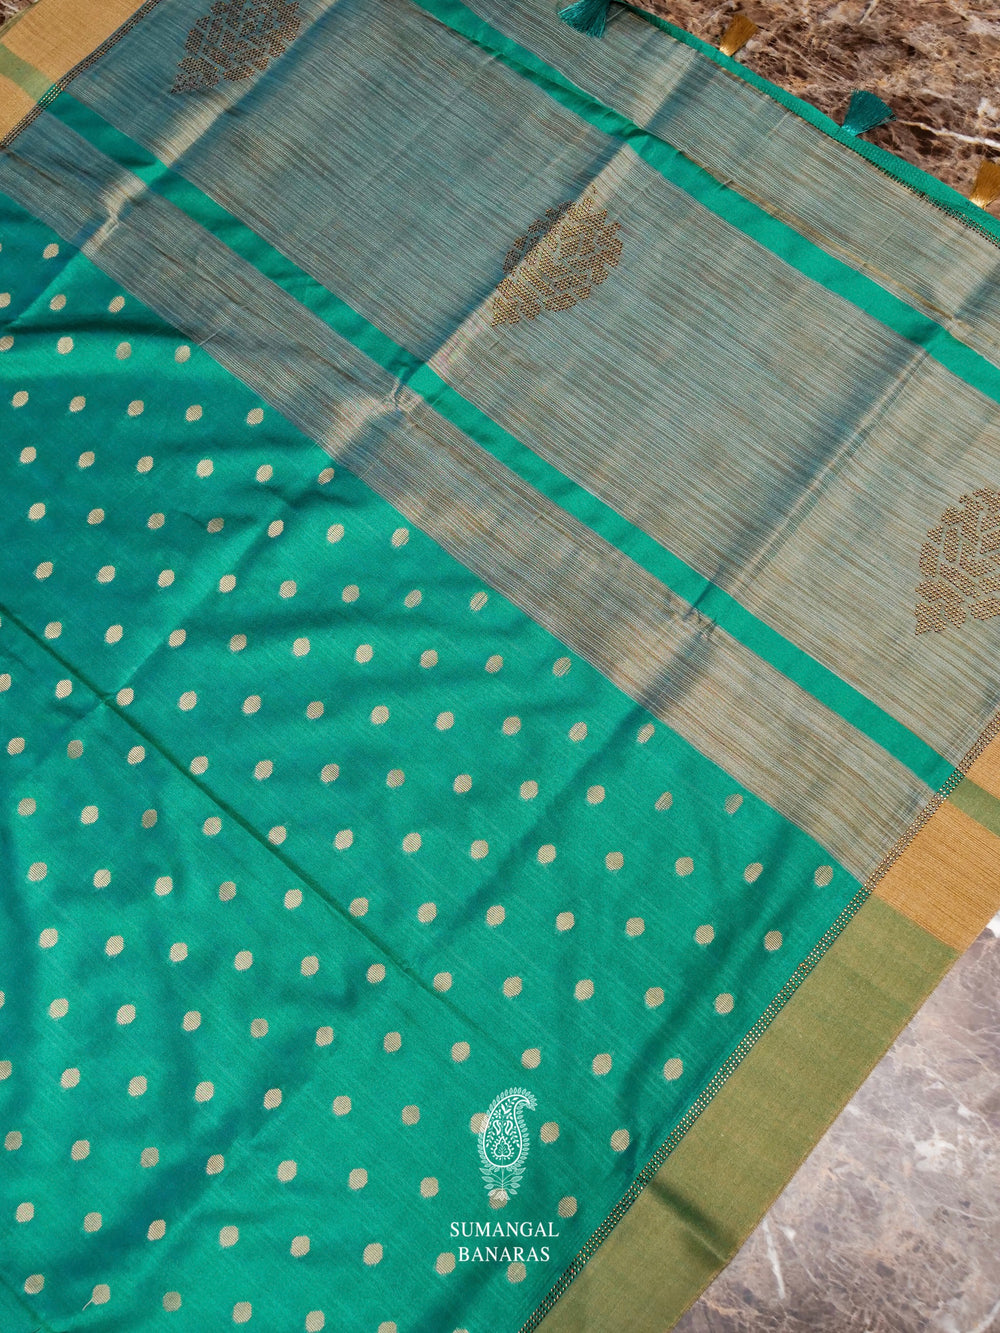 Banarasi Teal Green Blended Tussar Silk Saree